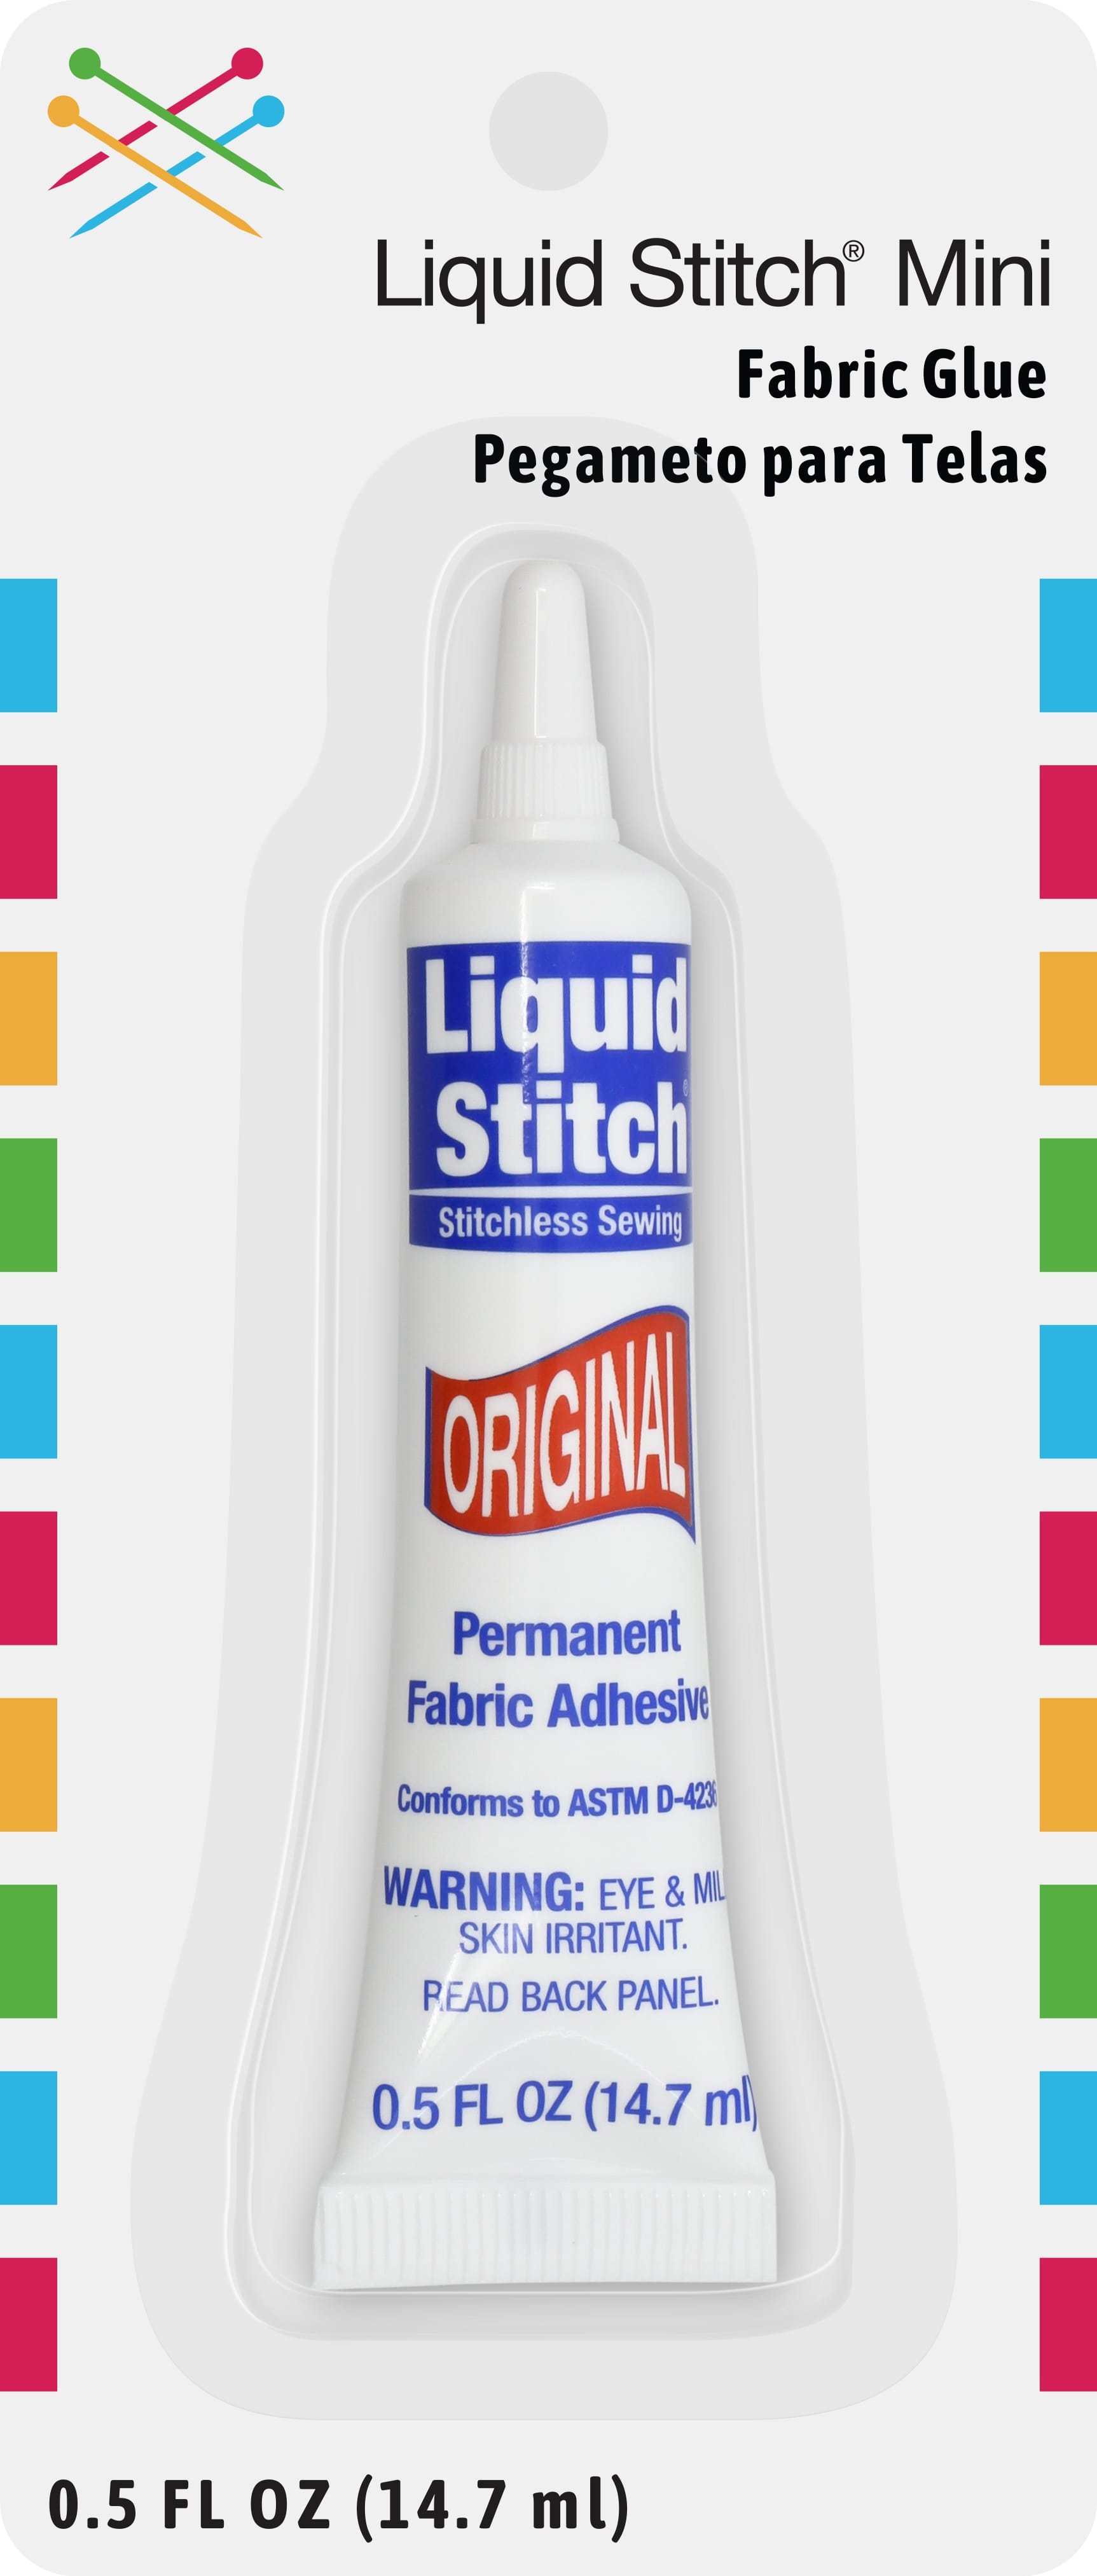 Liquid Stitch Mini 0.5 FL OZ – N. Jefferson Ltd.